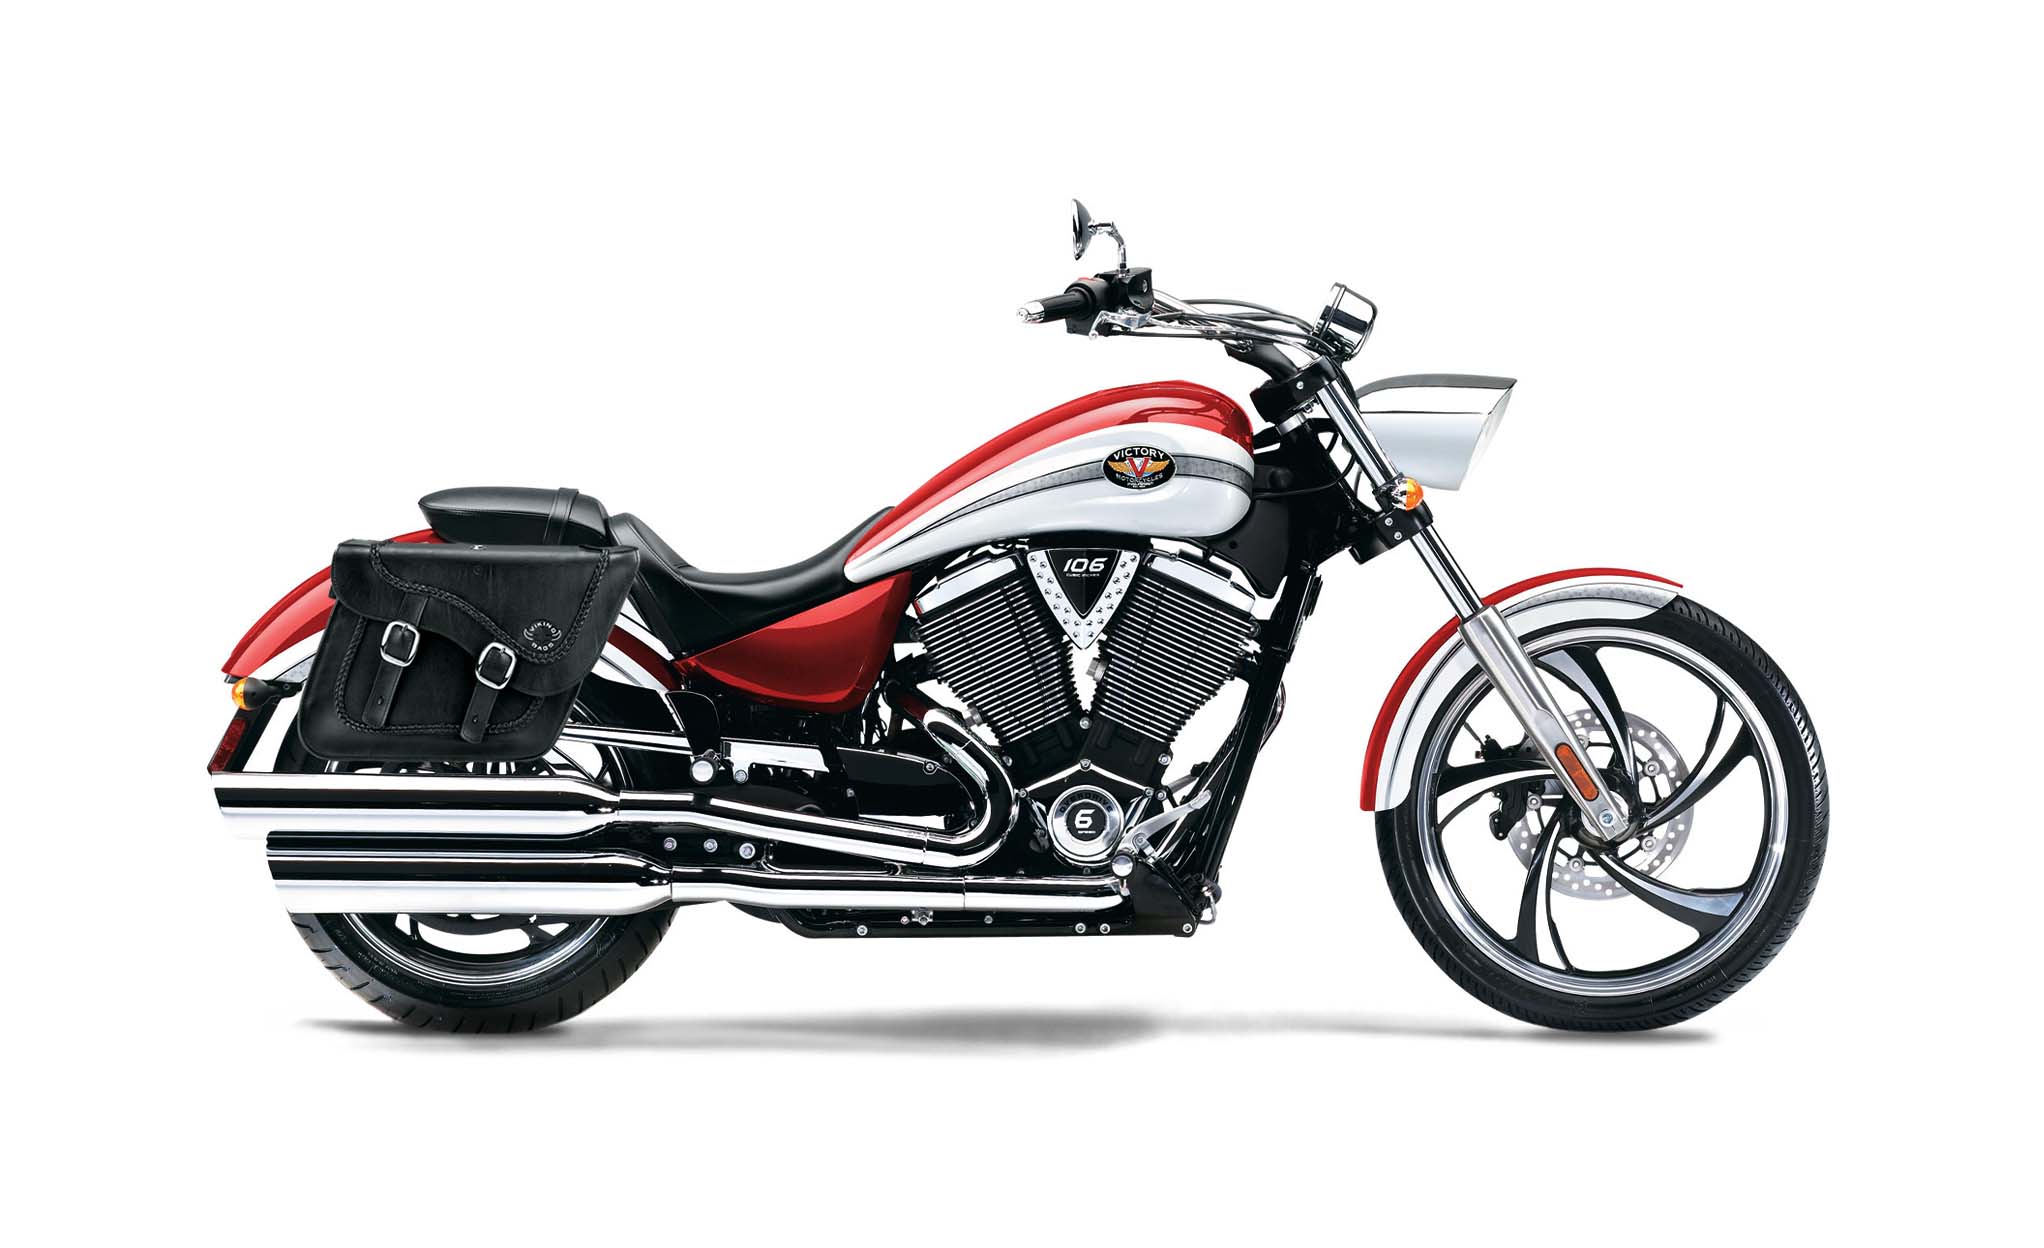 Viking Americano Victory Vegas Braided Large Leather Motorcycle Saddlebags on Bike Photo @expand